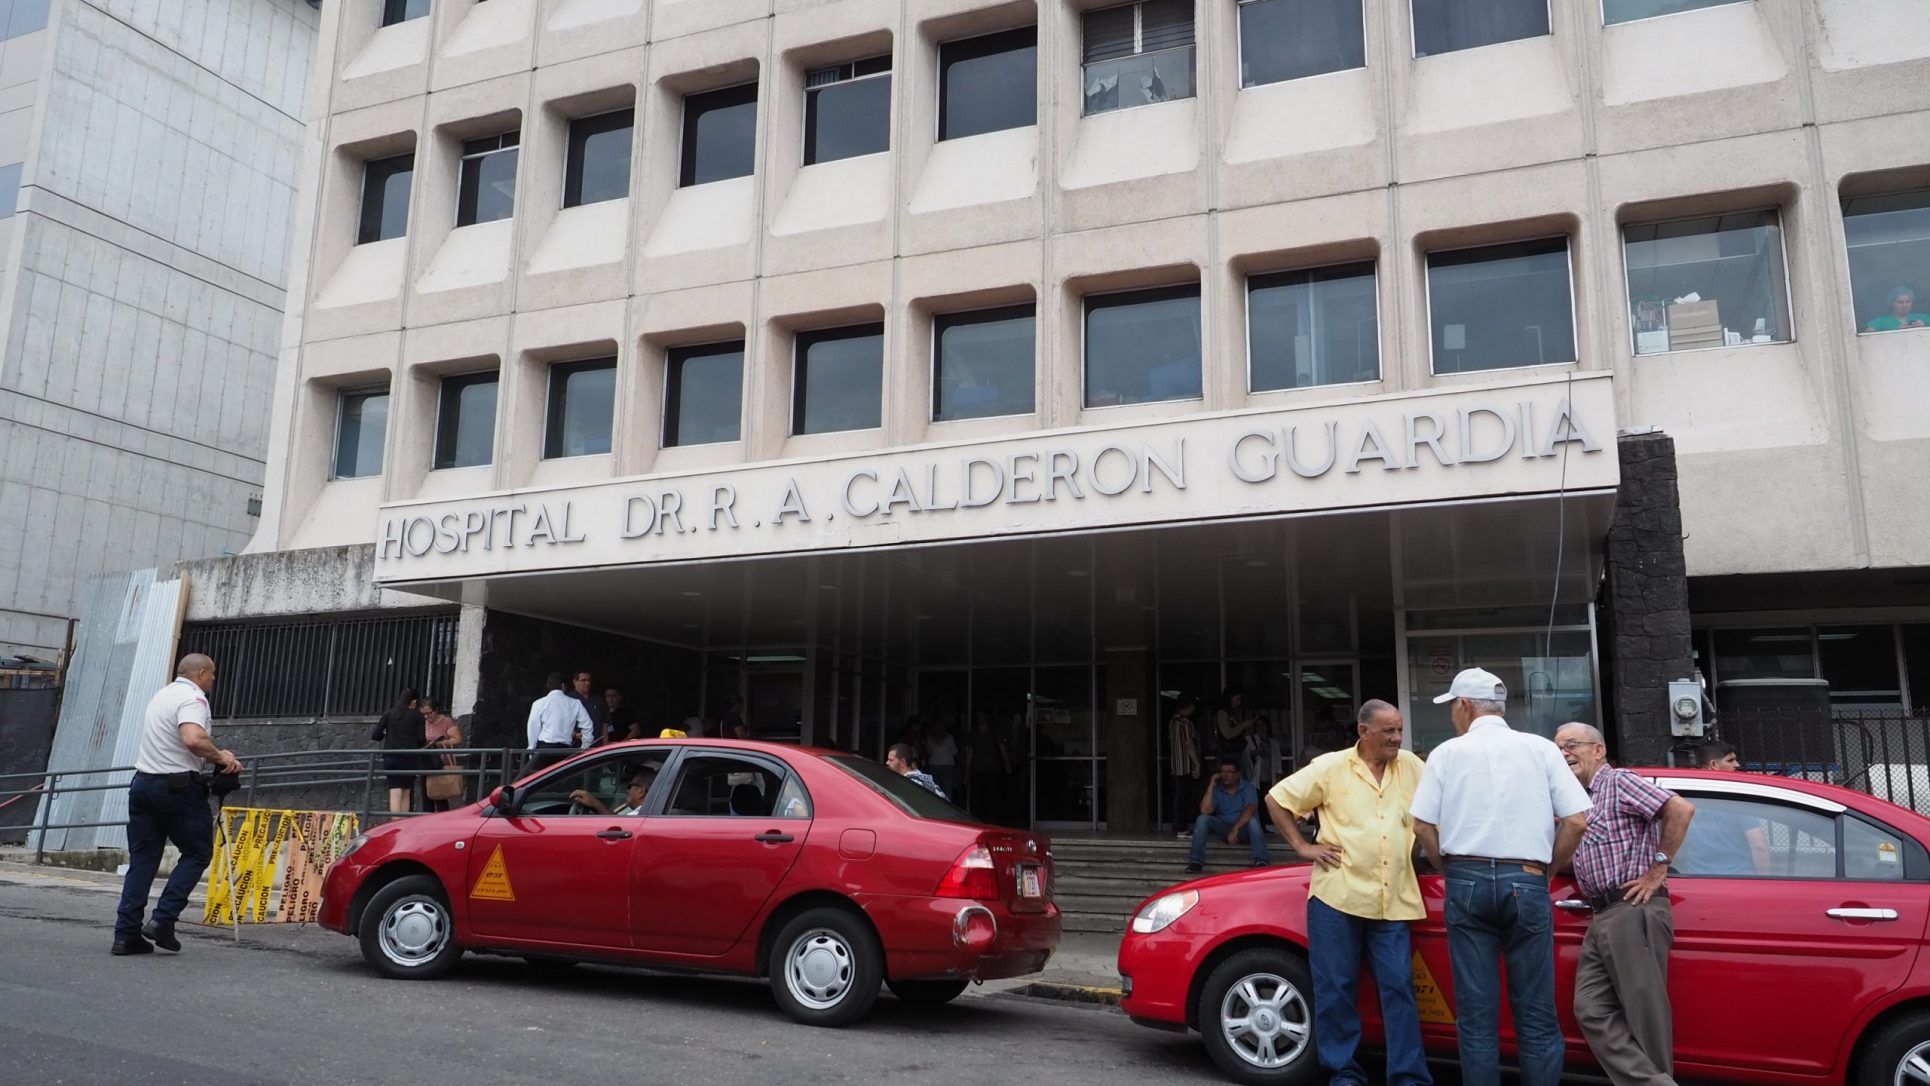 Suspendidas visitas en el Hospital Calderón Guardia hasta nuevo aviso